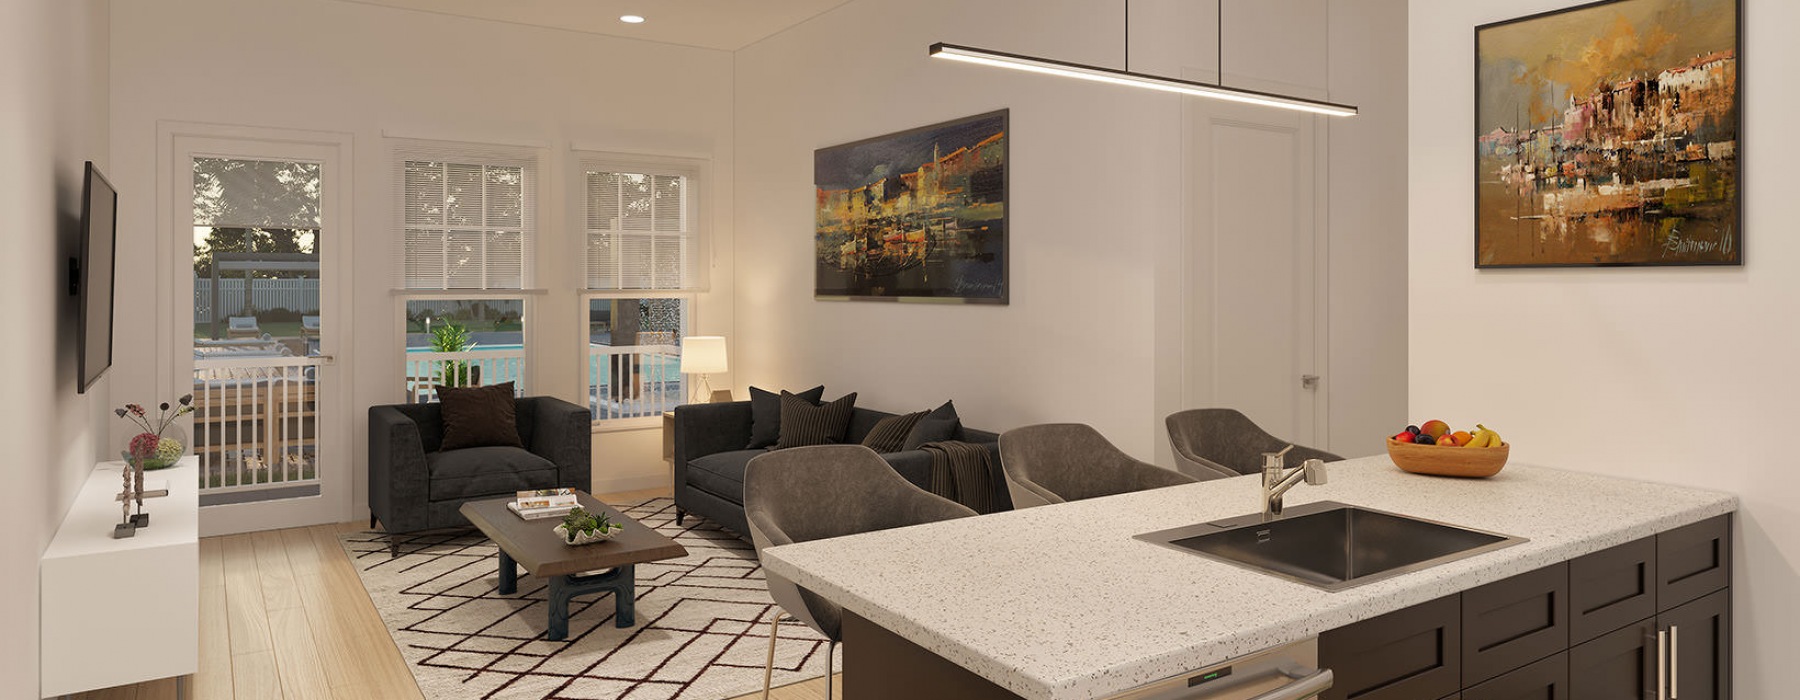 recessed lighting brightens spacious apartment interiors